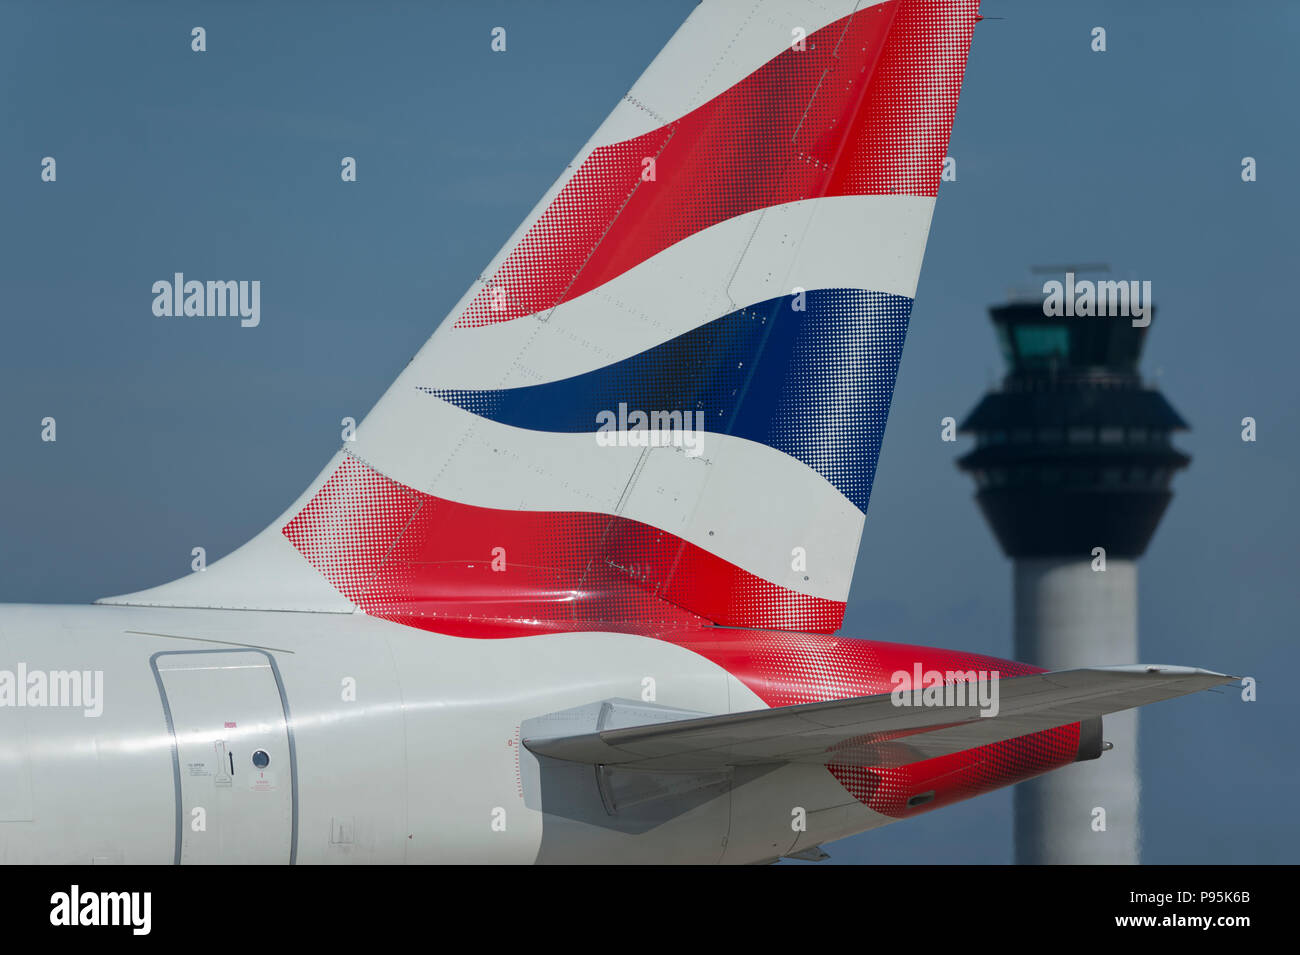 La tailfin d'un British Airways Airbus A319-131 circule le long de la piste en face de la tour de contrôle à l'aéroport de Manchester. Banque D'Images